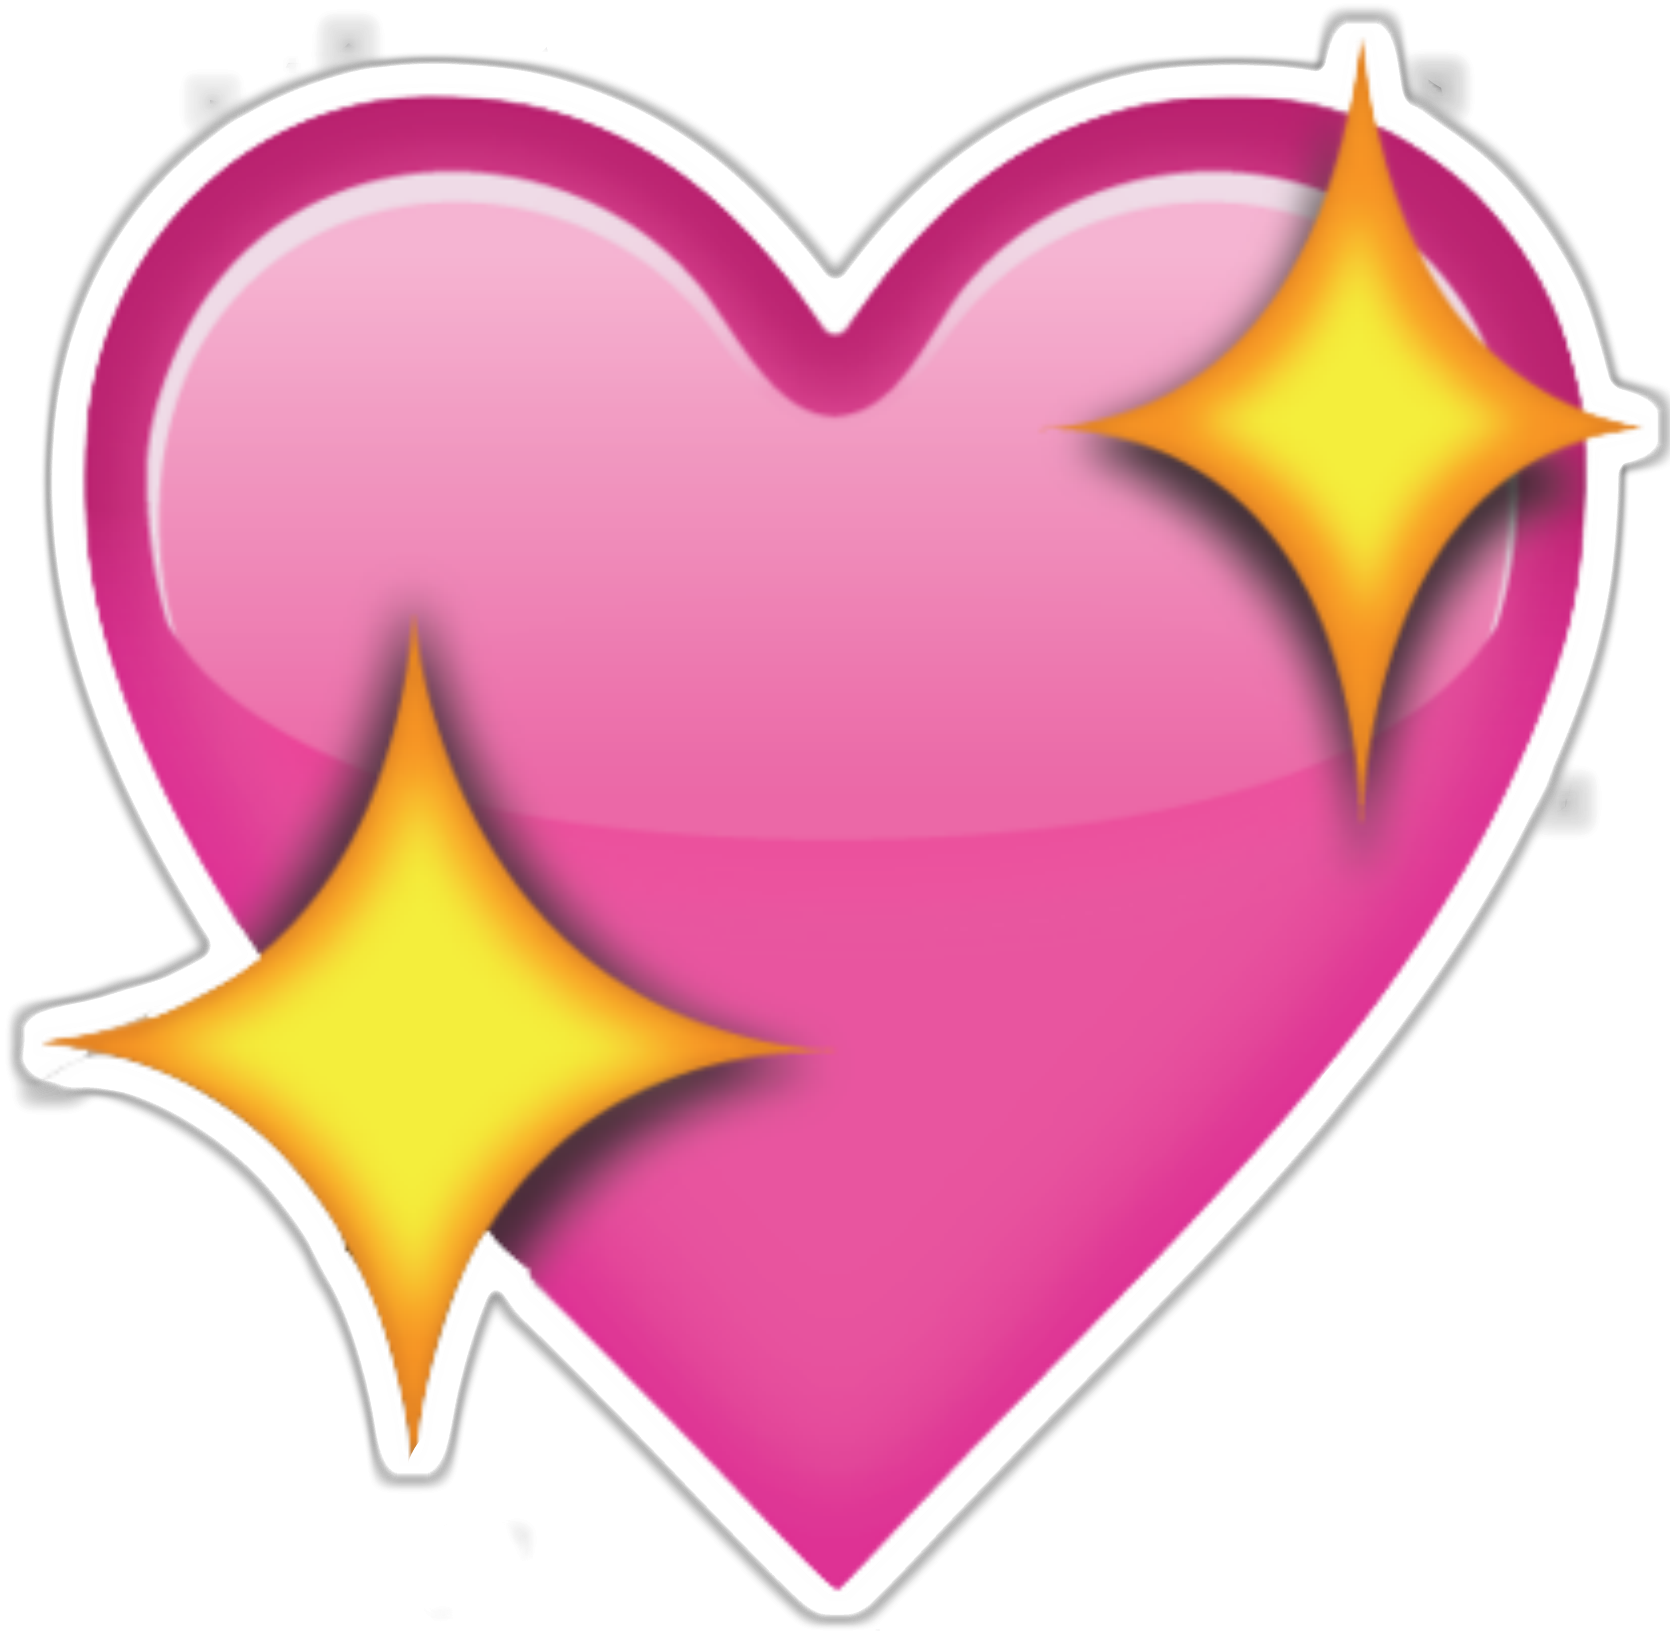 Imagens transparentes de estrela emoji no coração rosa #40573